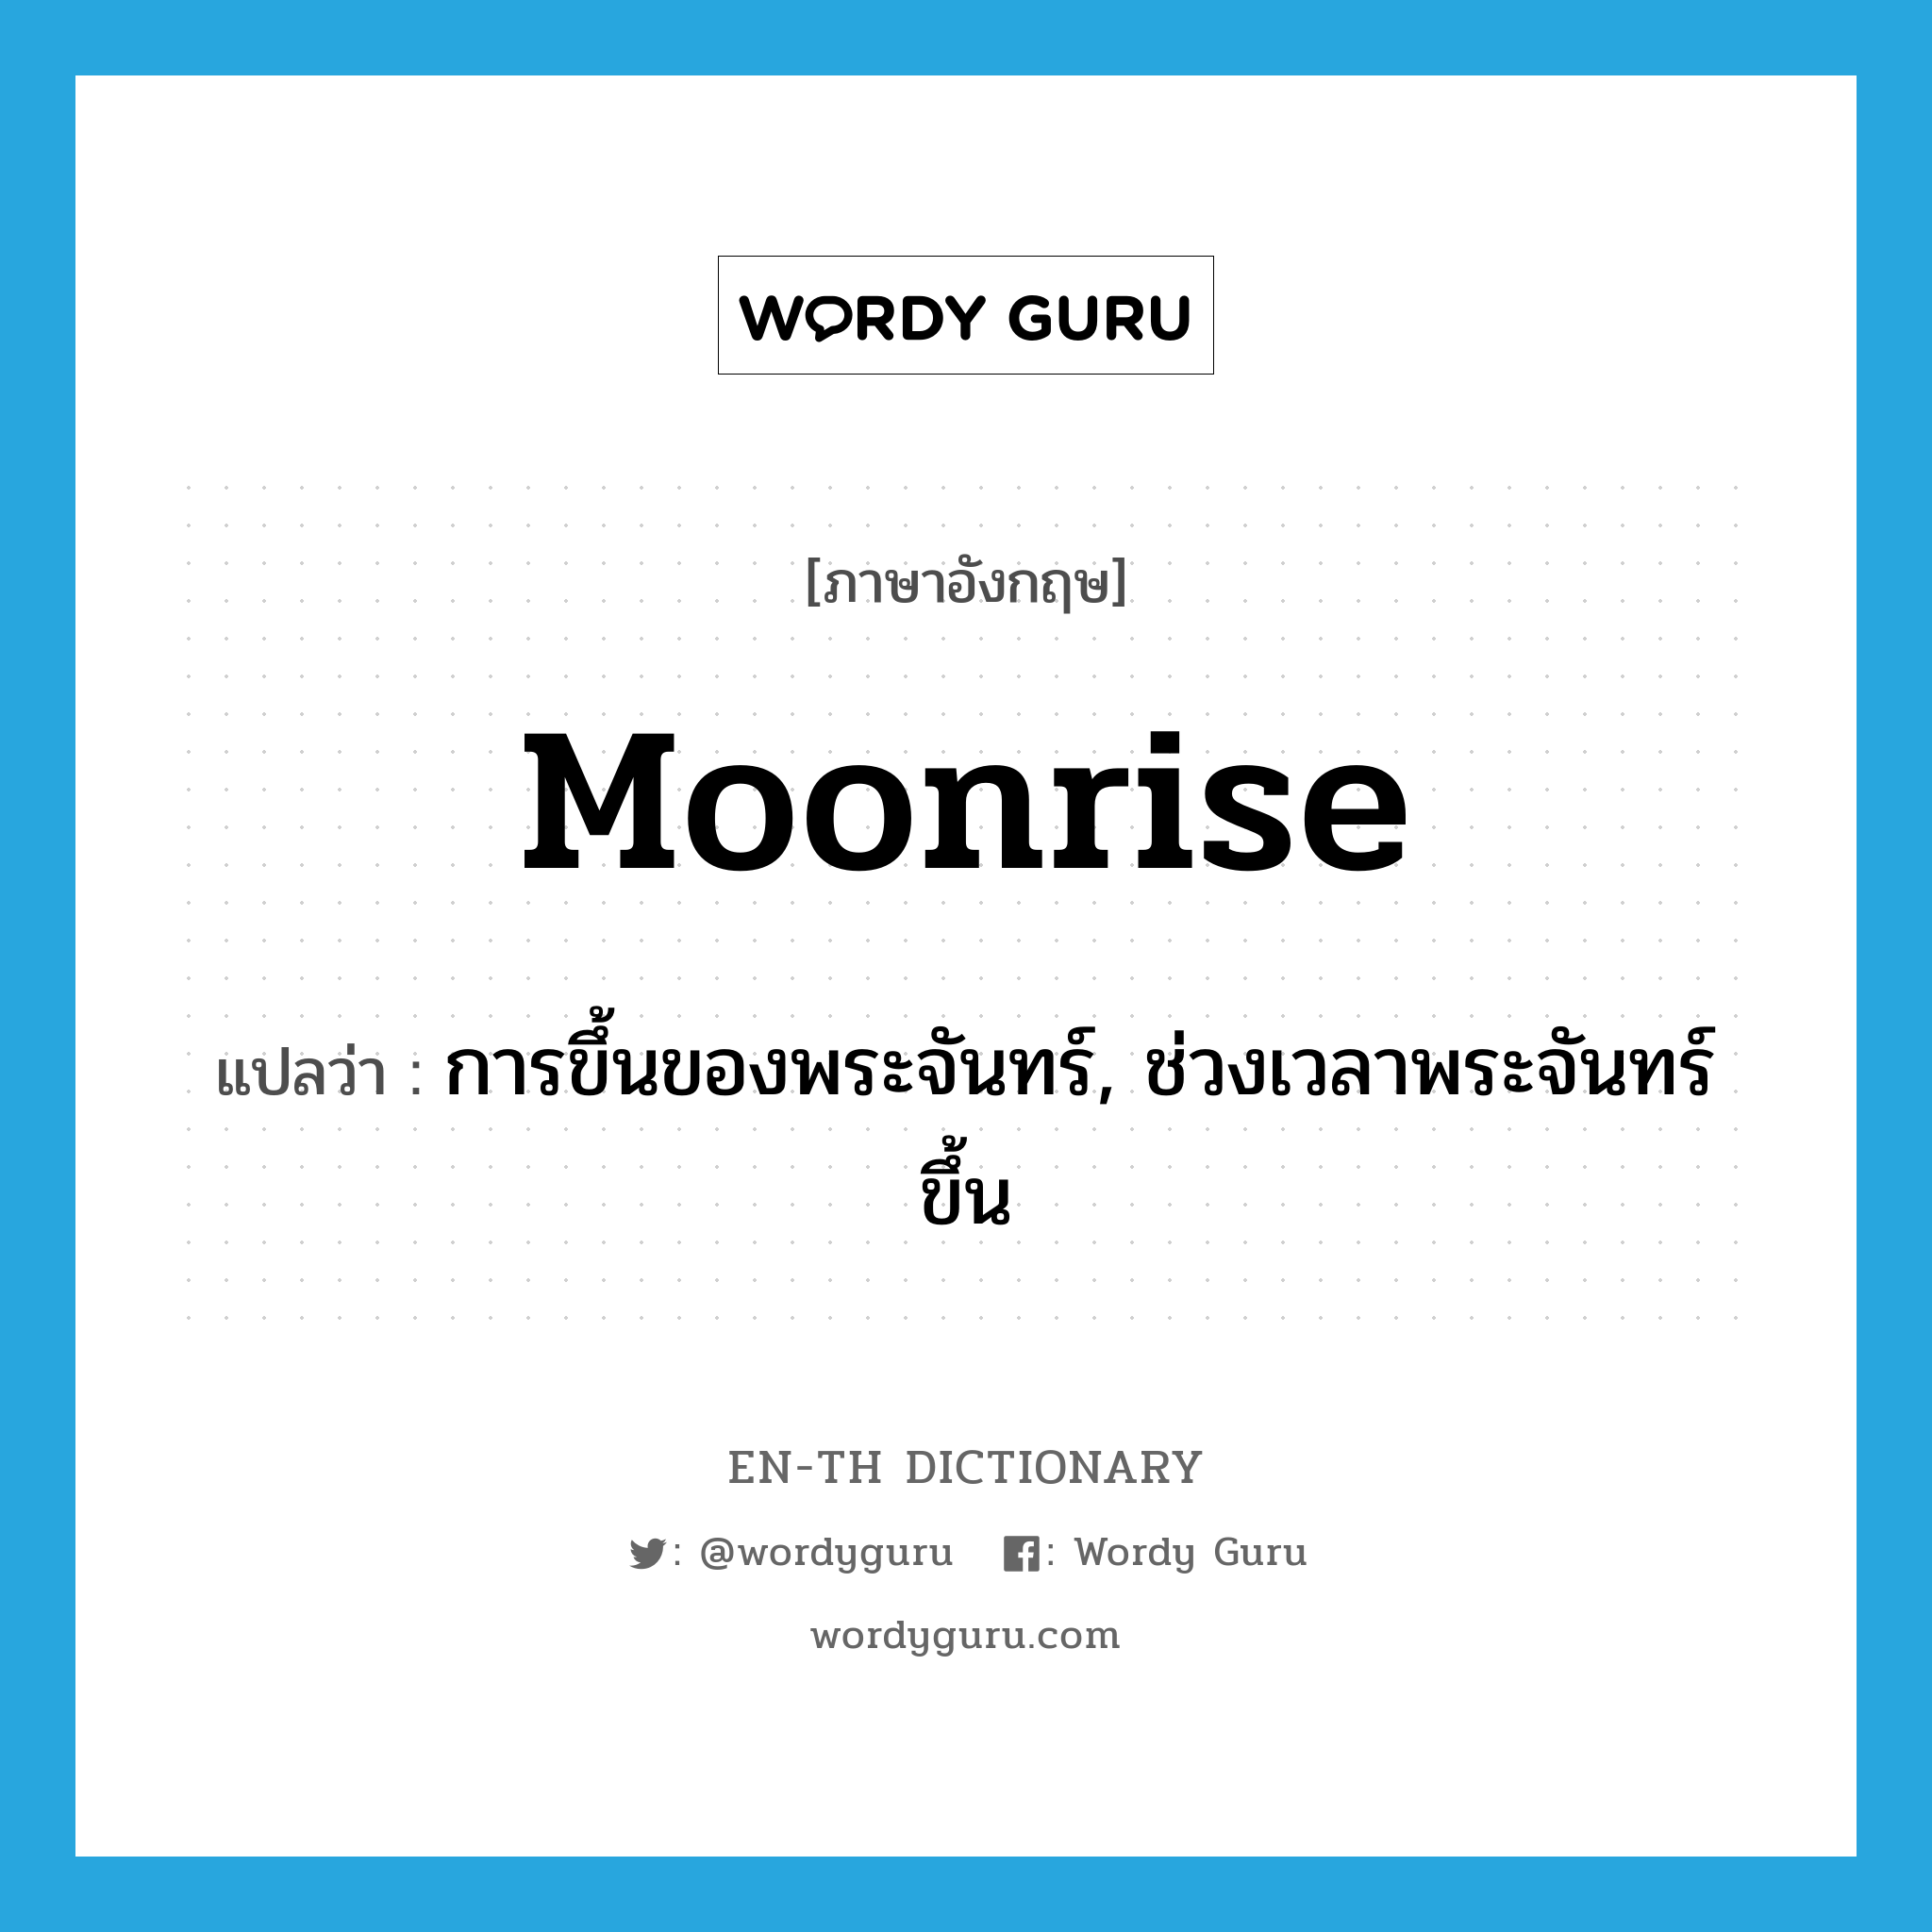 moonrise แปลว่า?, คำศัพท์ภาษาอังกฤษ moonrise แปลว่า การขึ้นของพระจันทร์, ช่วงเวลาพระจันทร์ขึ้น ประเภท N หมวด N